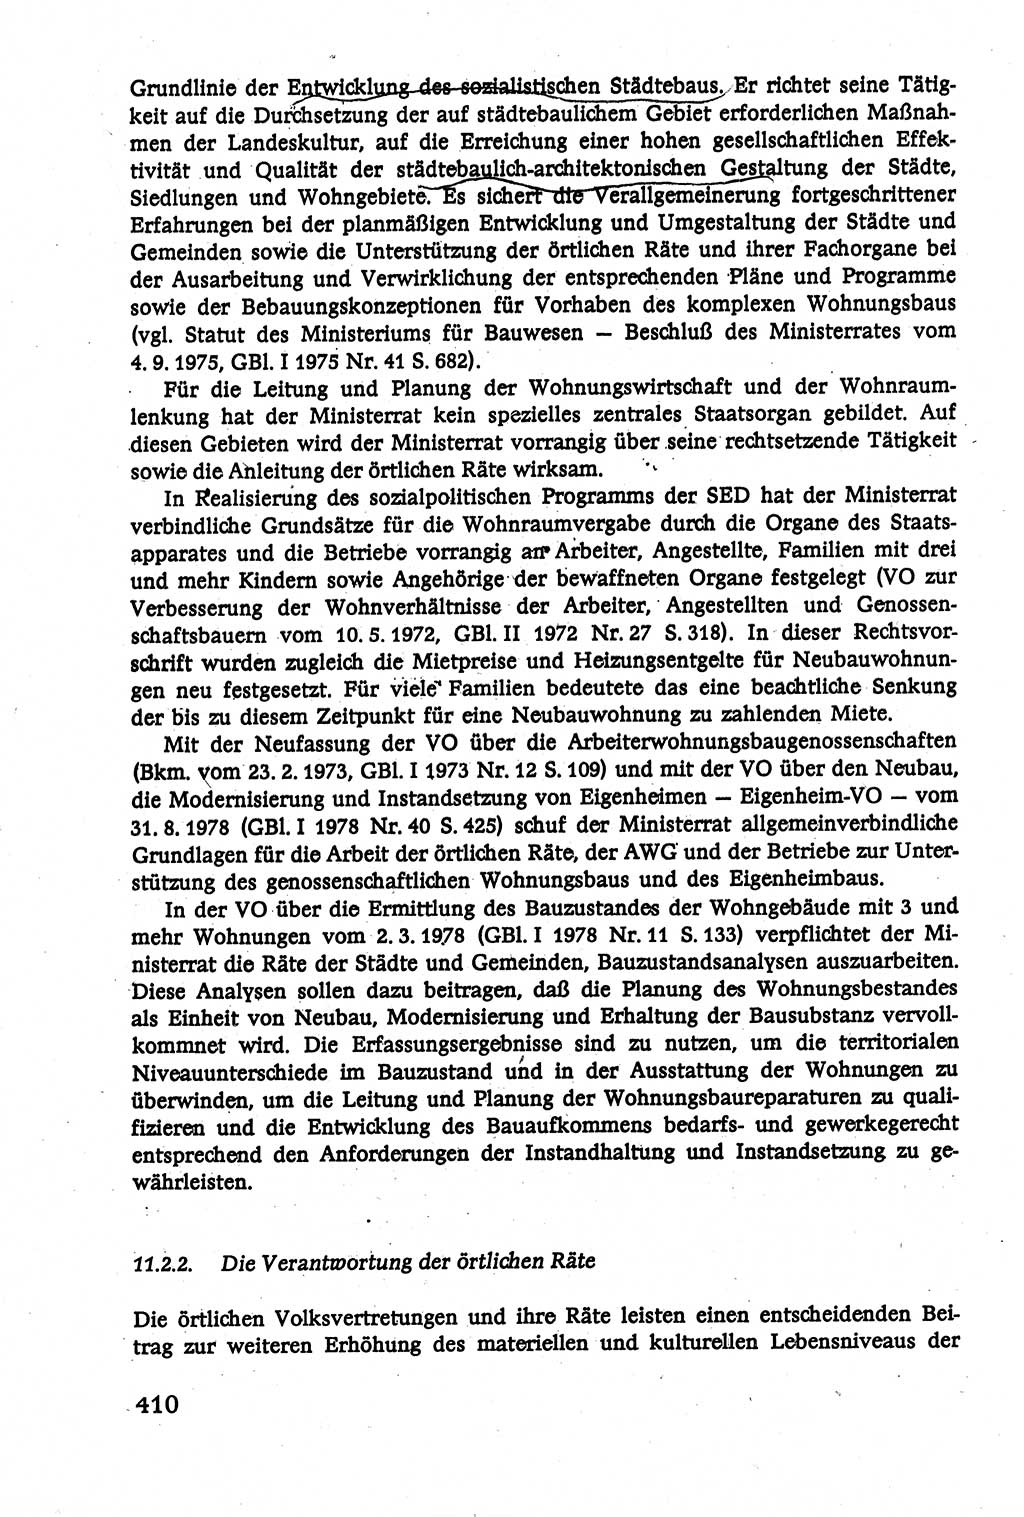 Verwaltungsrecht [Deutsche Demokratische Republik (DDR)], Lehrbuch 1979, Seite 410 (Verw.-R. DDR Lb. 1979, S. 410)